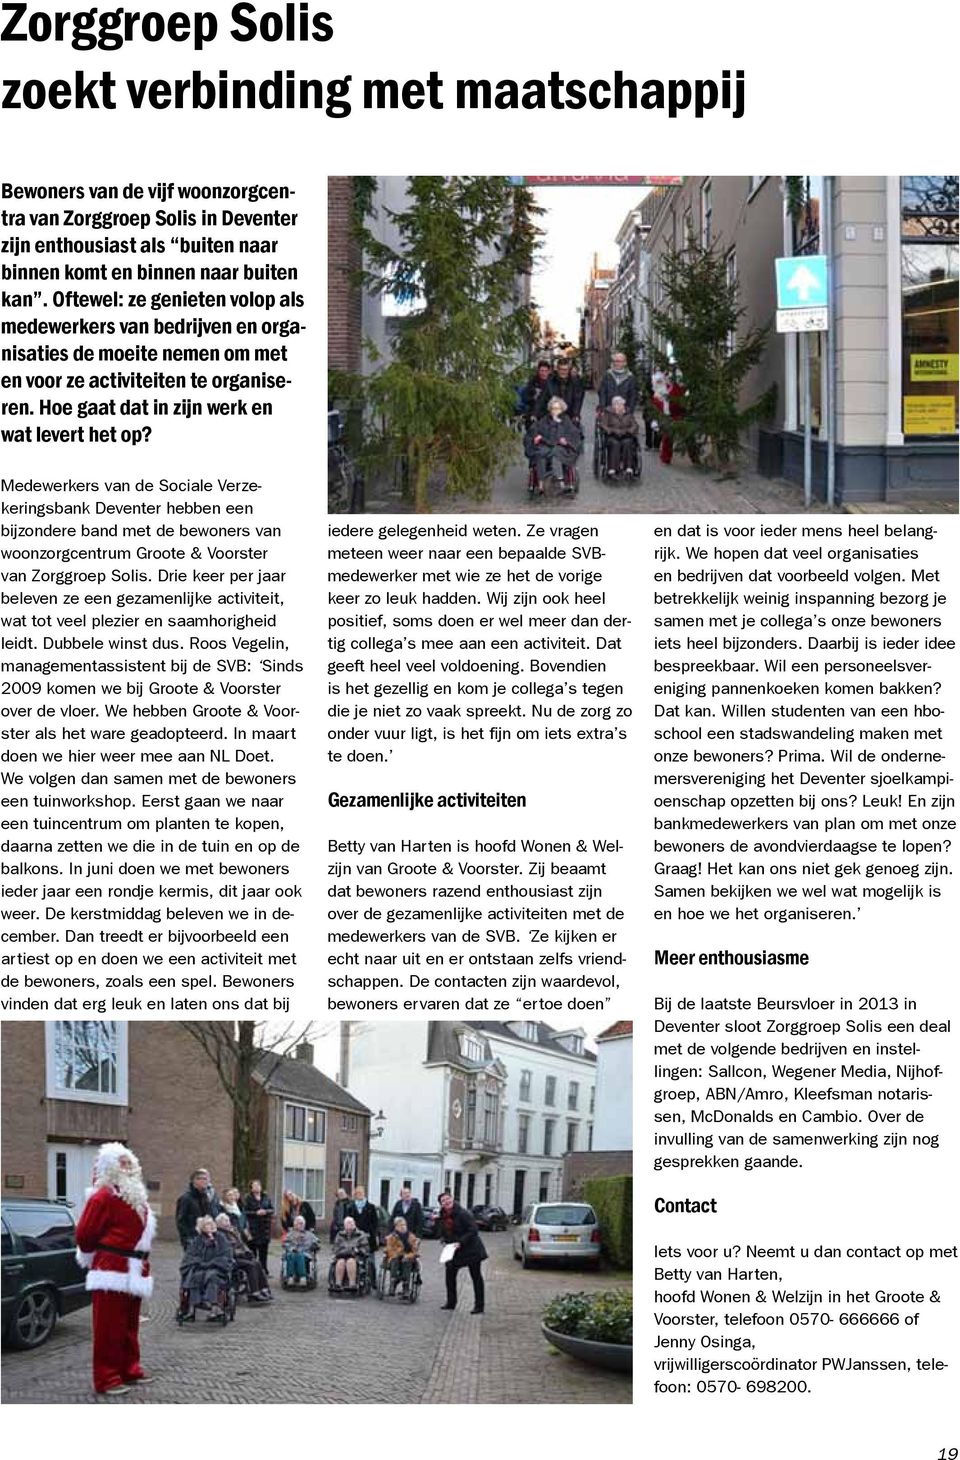 Medewerkers van de Sociale Verzekeringsbank Deventer hebben een bijzondere band met de bewoners van woonzorgcentrum Groote & Voorster van Zorggroep Solis.